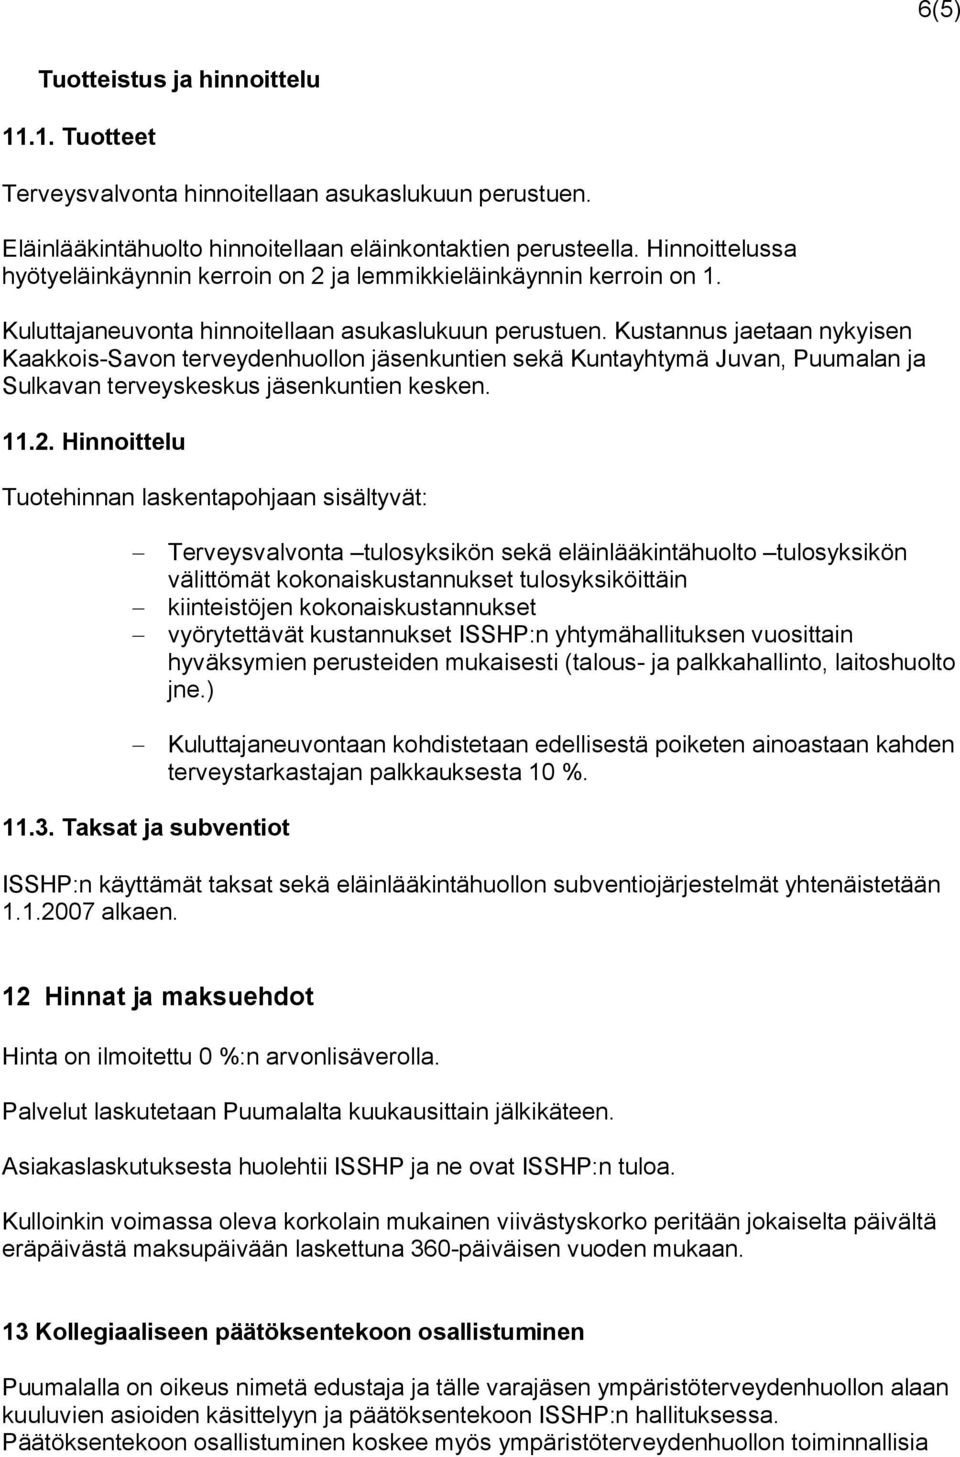 Kustannus jaetaan nykyisen Kaakkois-Savon terveydenhuollon jäsenkuntien sekä Kuntayhtymä Juvan, Puumalan ja Sulkavan terveyskeskus jäsenkuntien kesken. 11.2.